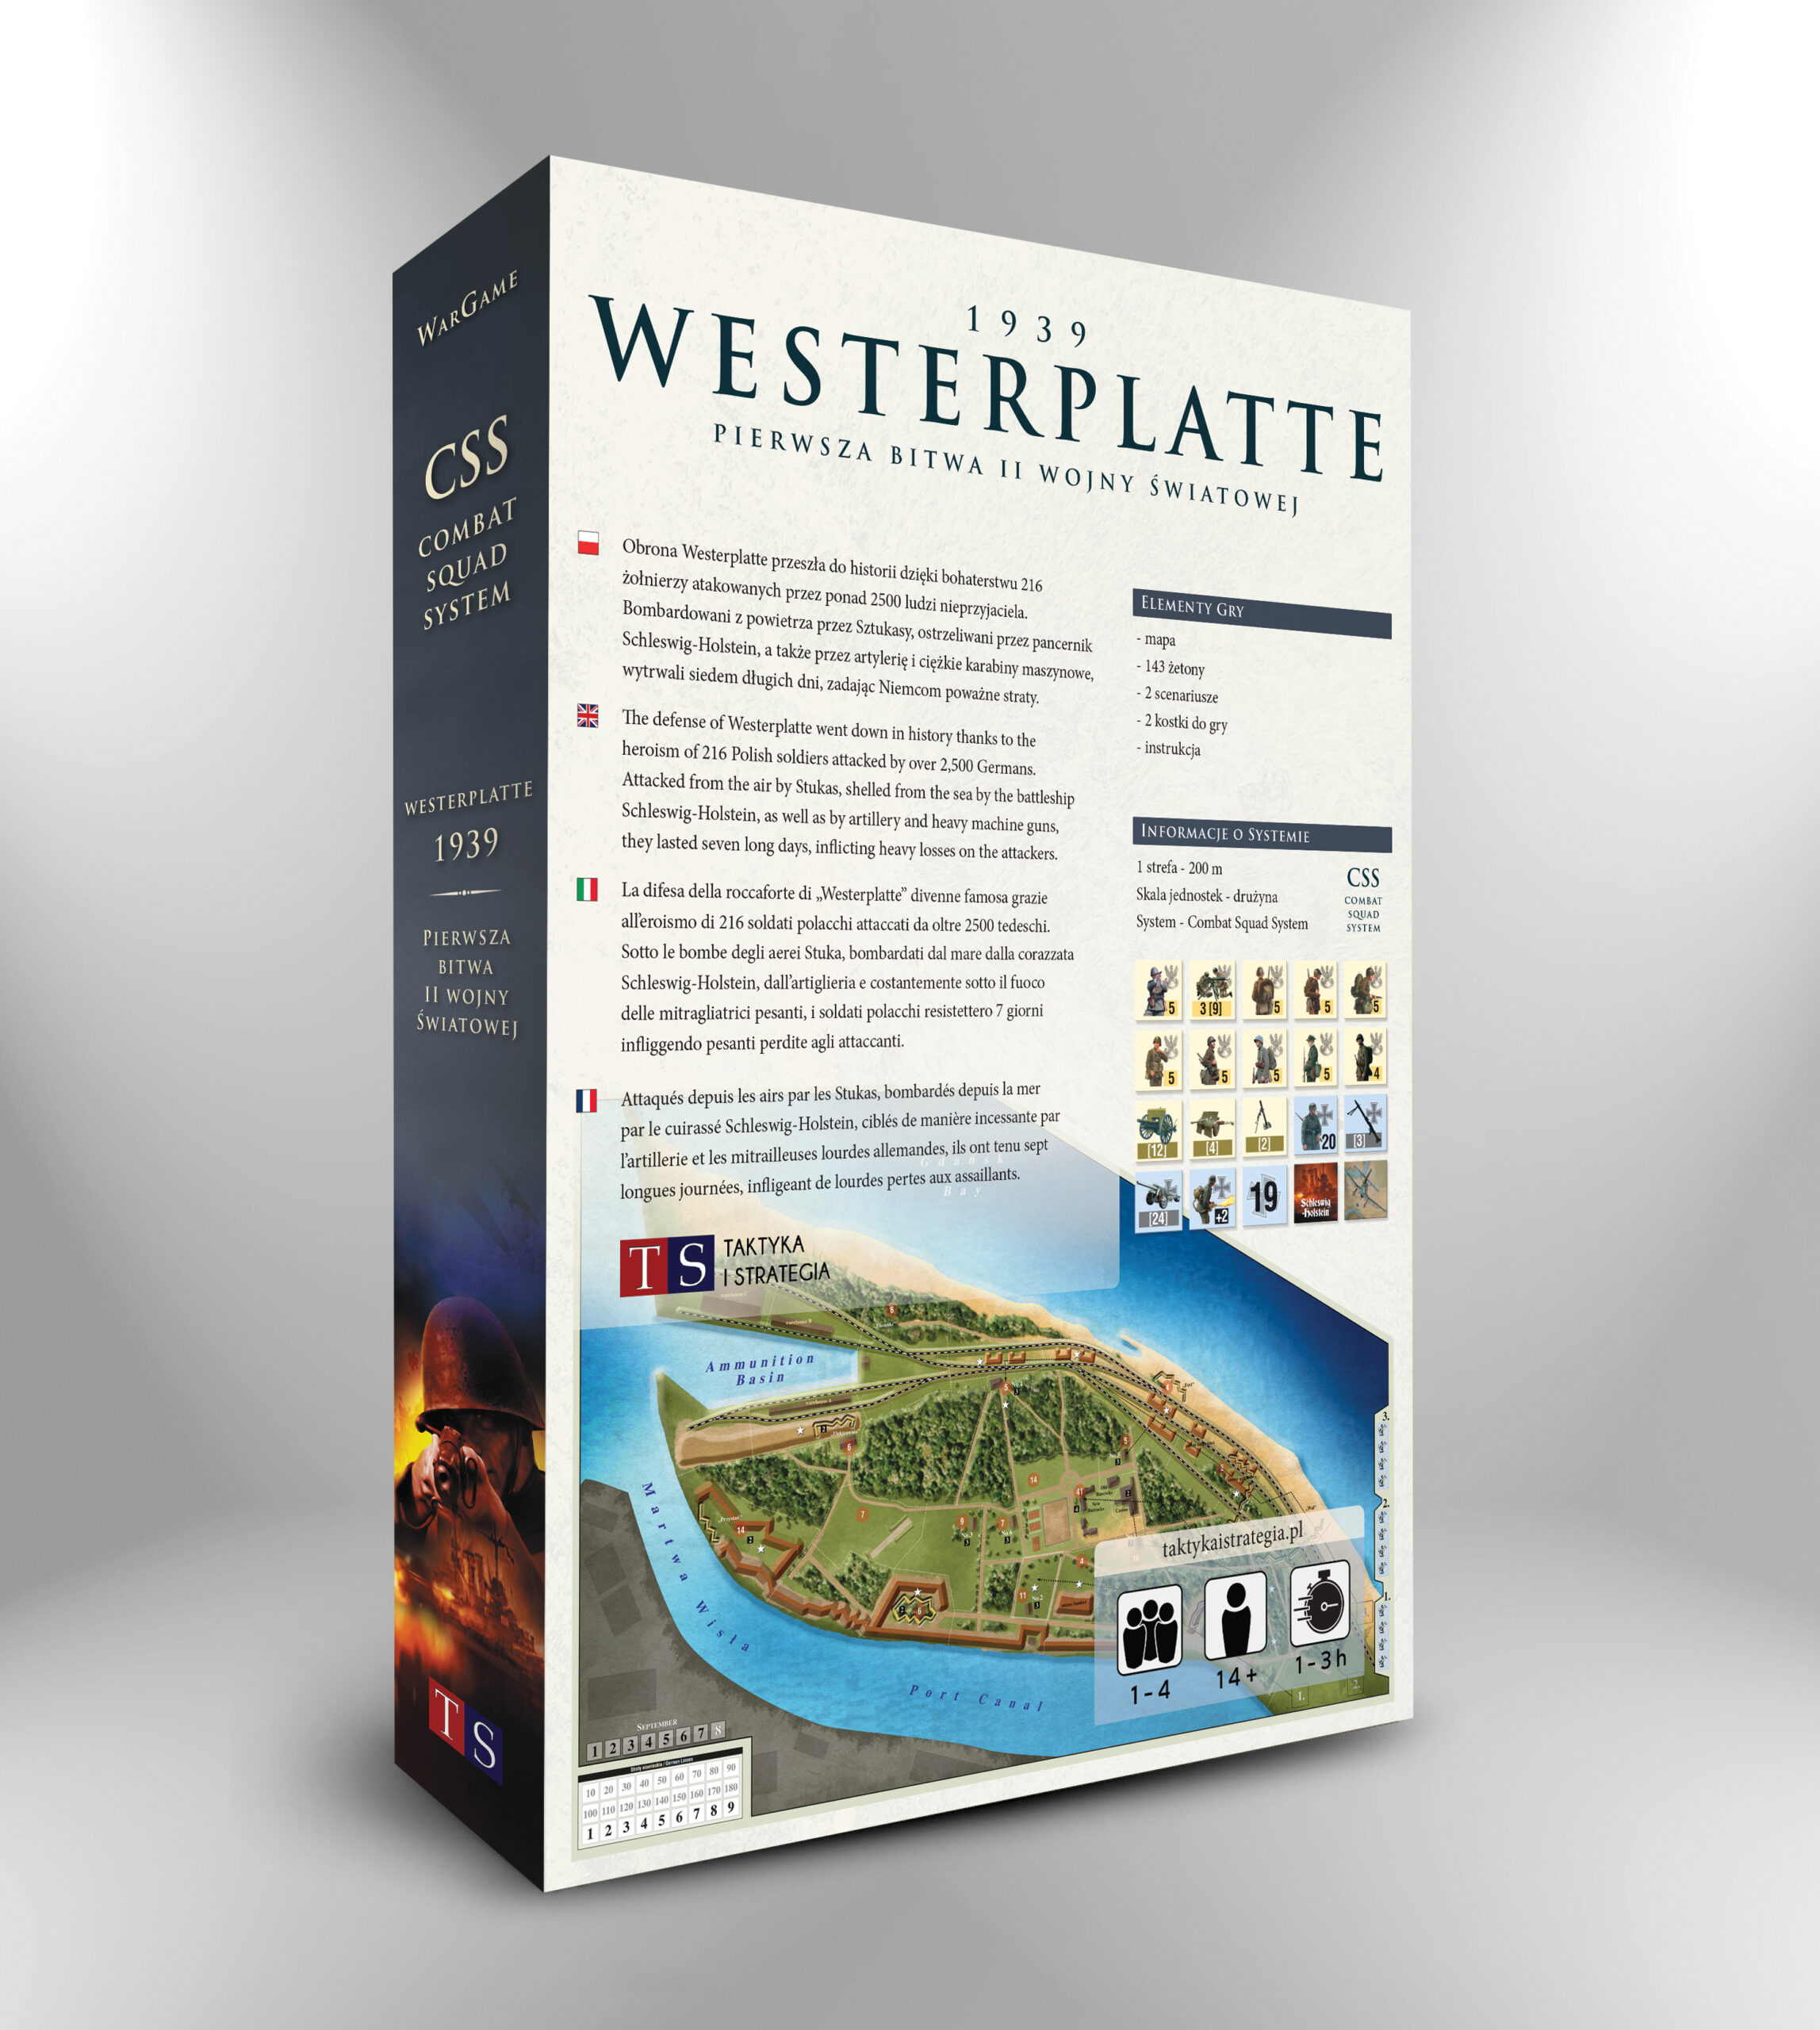 Bitwa o Westerplatte 1939 gra wojenna pudelko